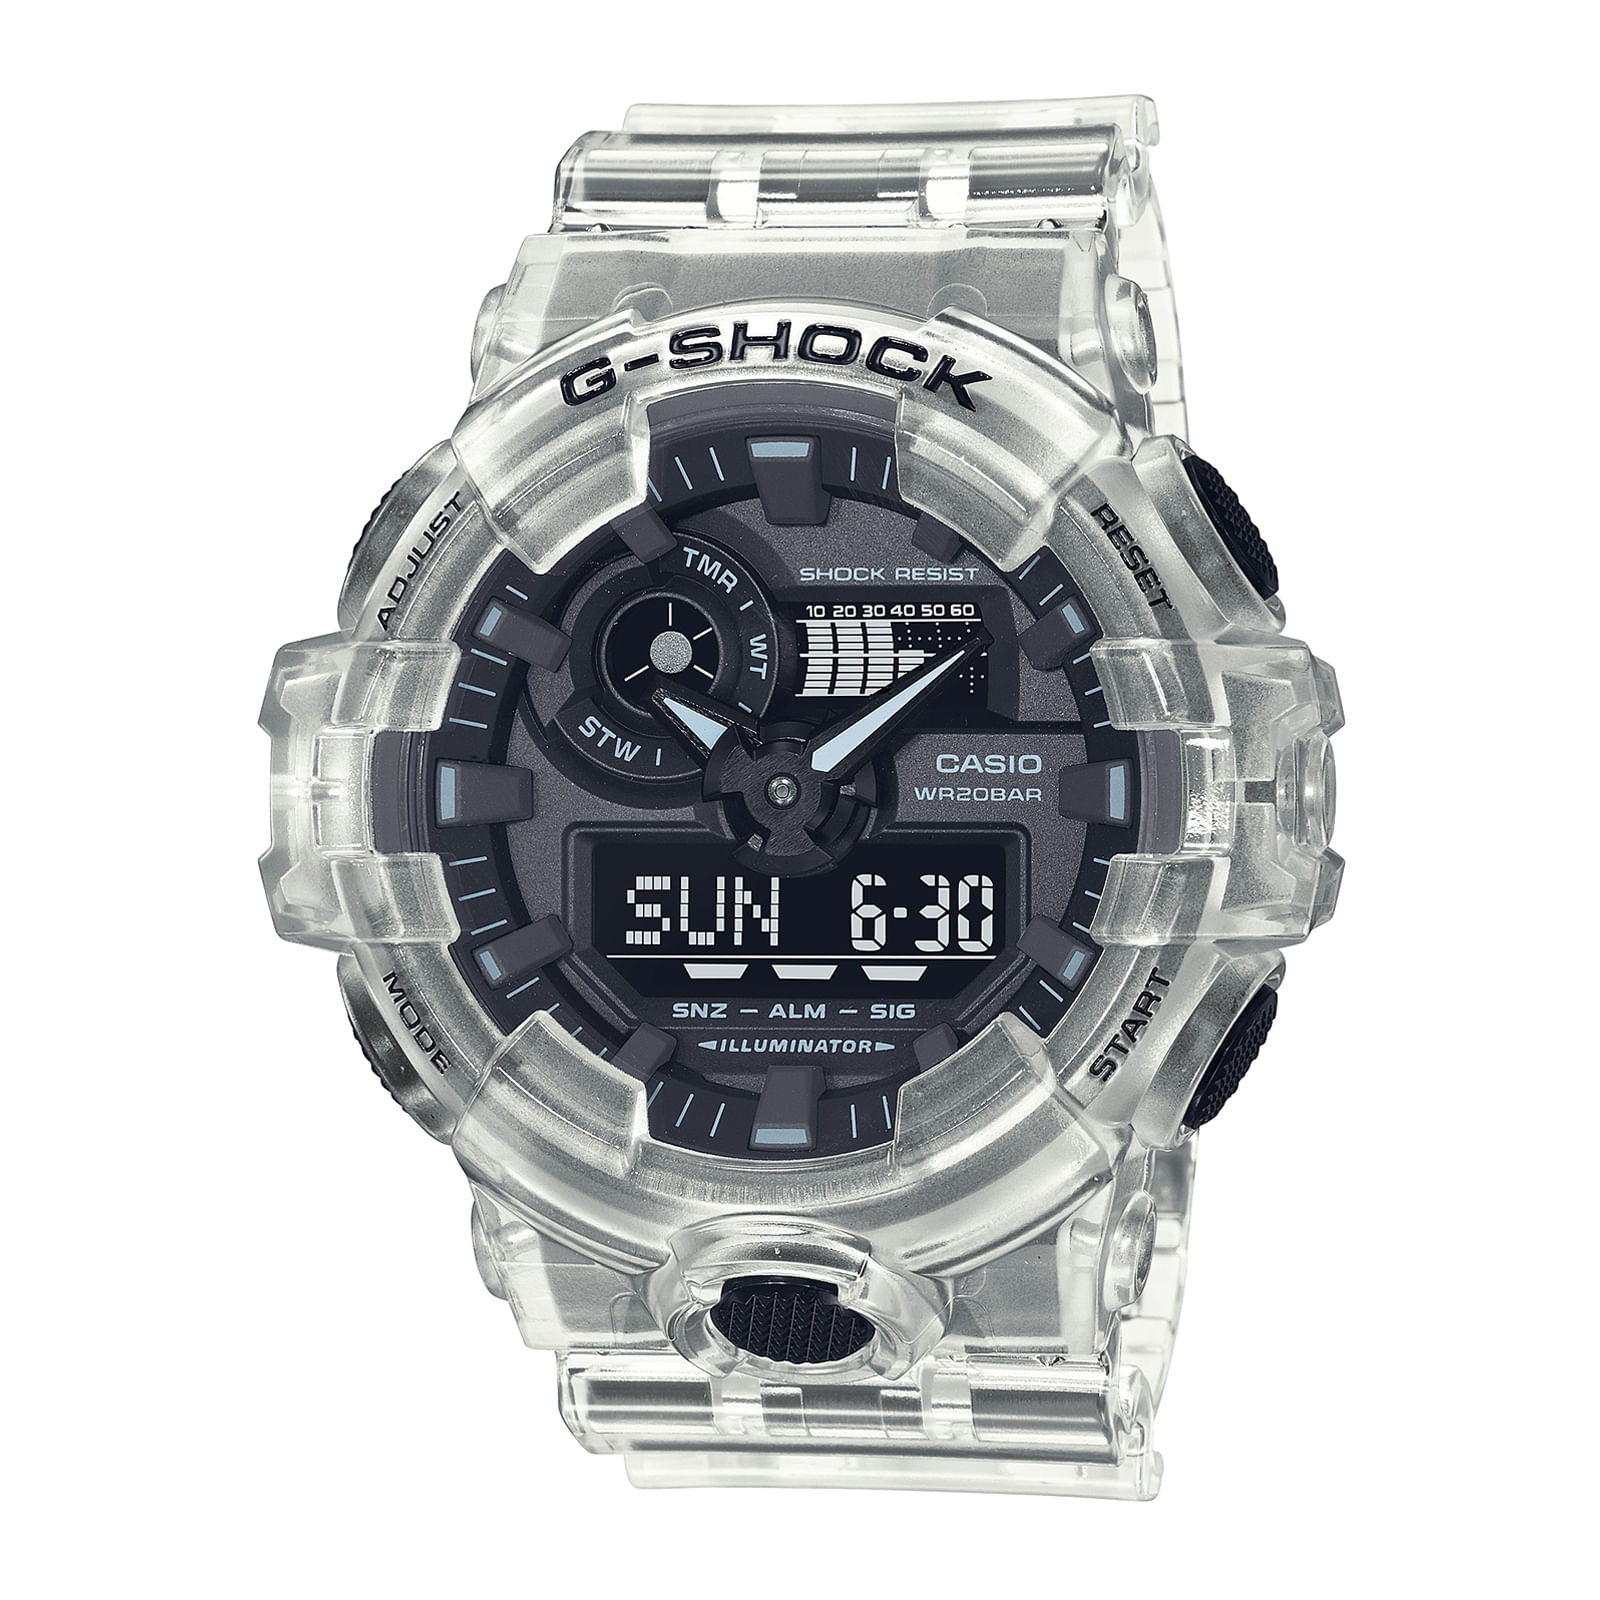 Reloj G-SHOCK GA-700SKE-7A Resina Hombre Blanco